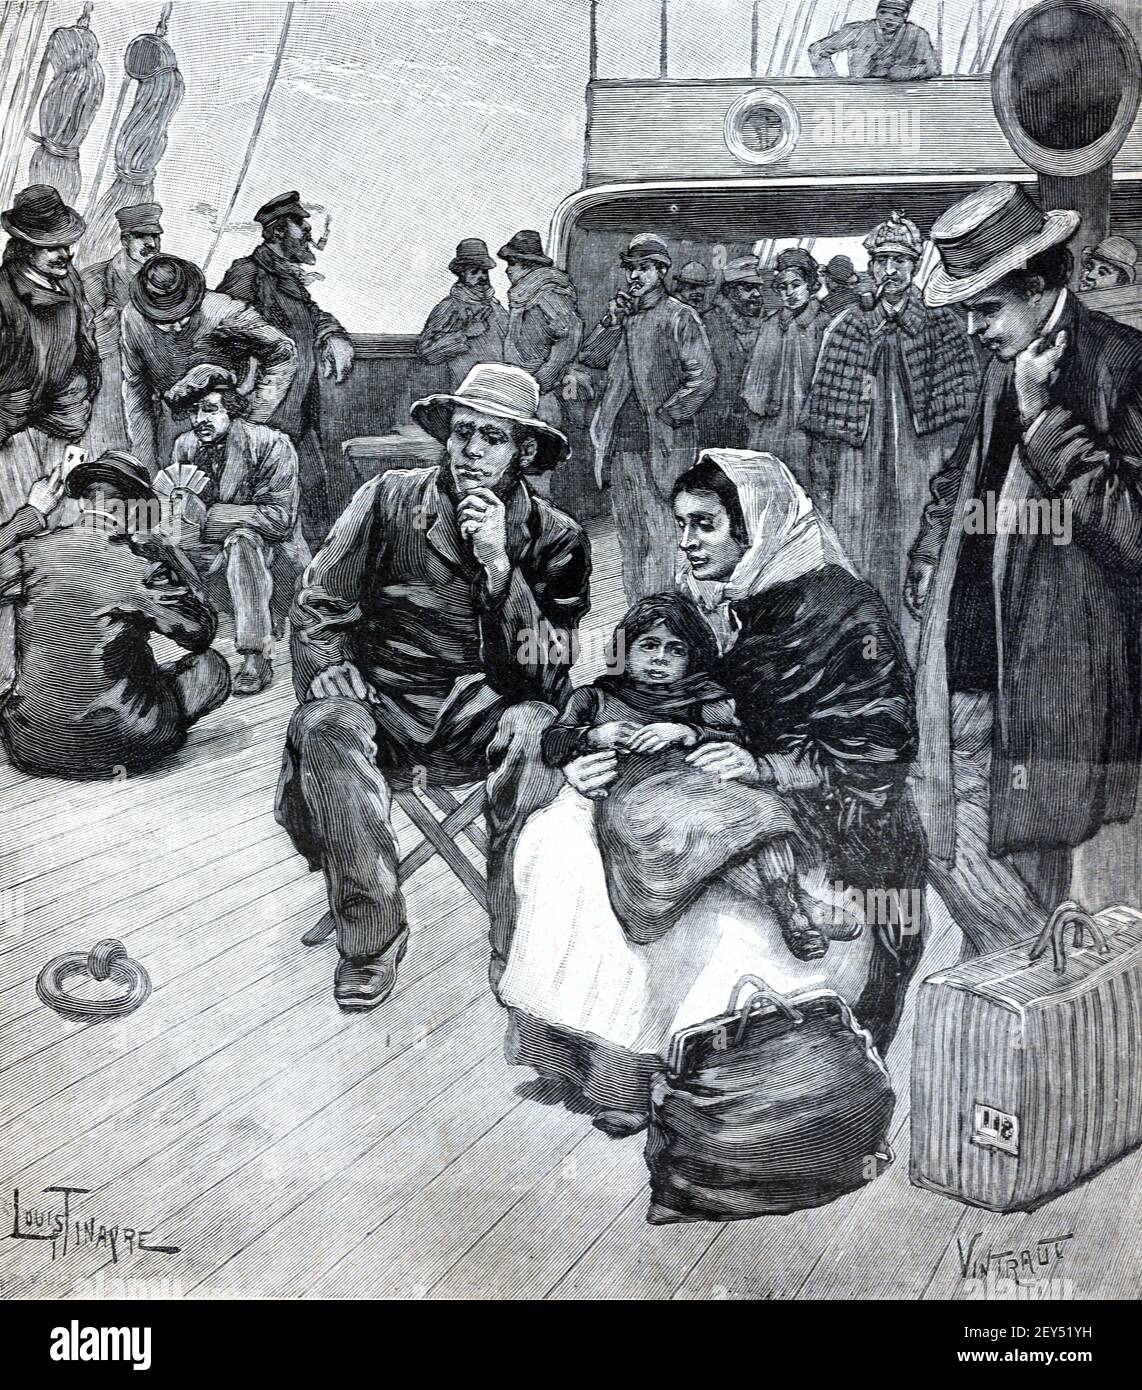 Inmigrantes europeos a bordo de un barco con destino al Nuevo Mundo, Norte o Sur Ammerica 1896 Vintage Illustration or Engraving Foto de stock